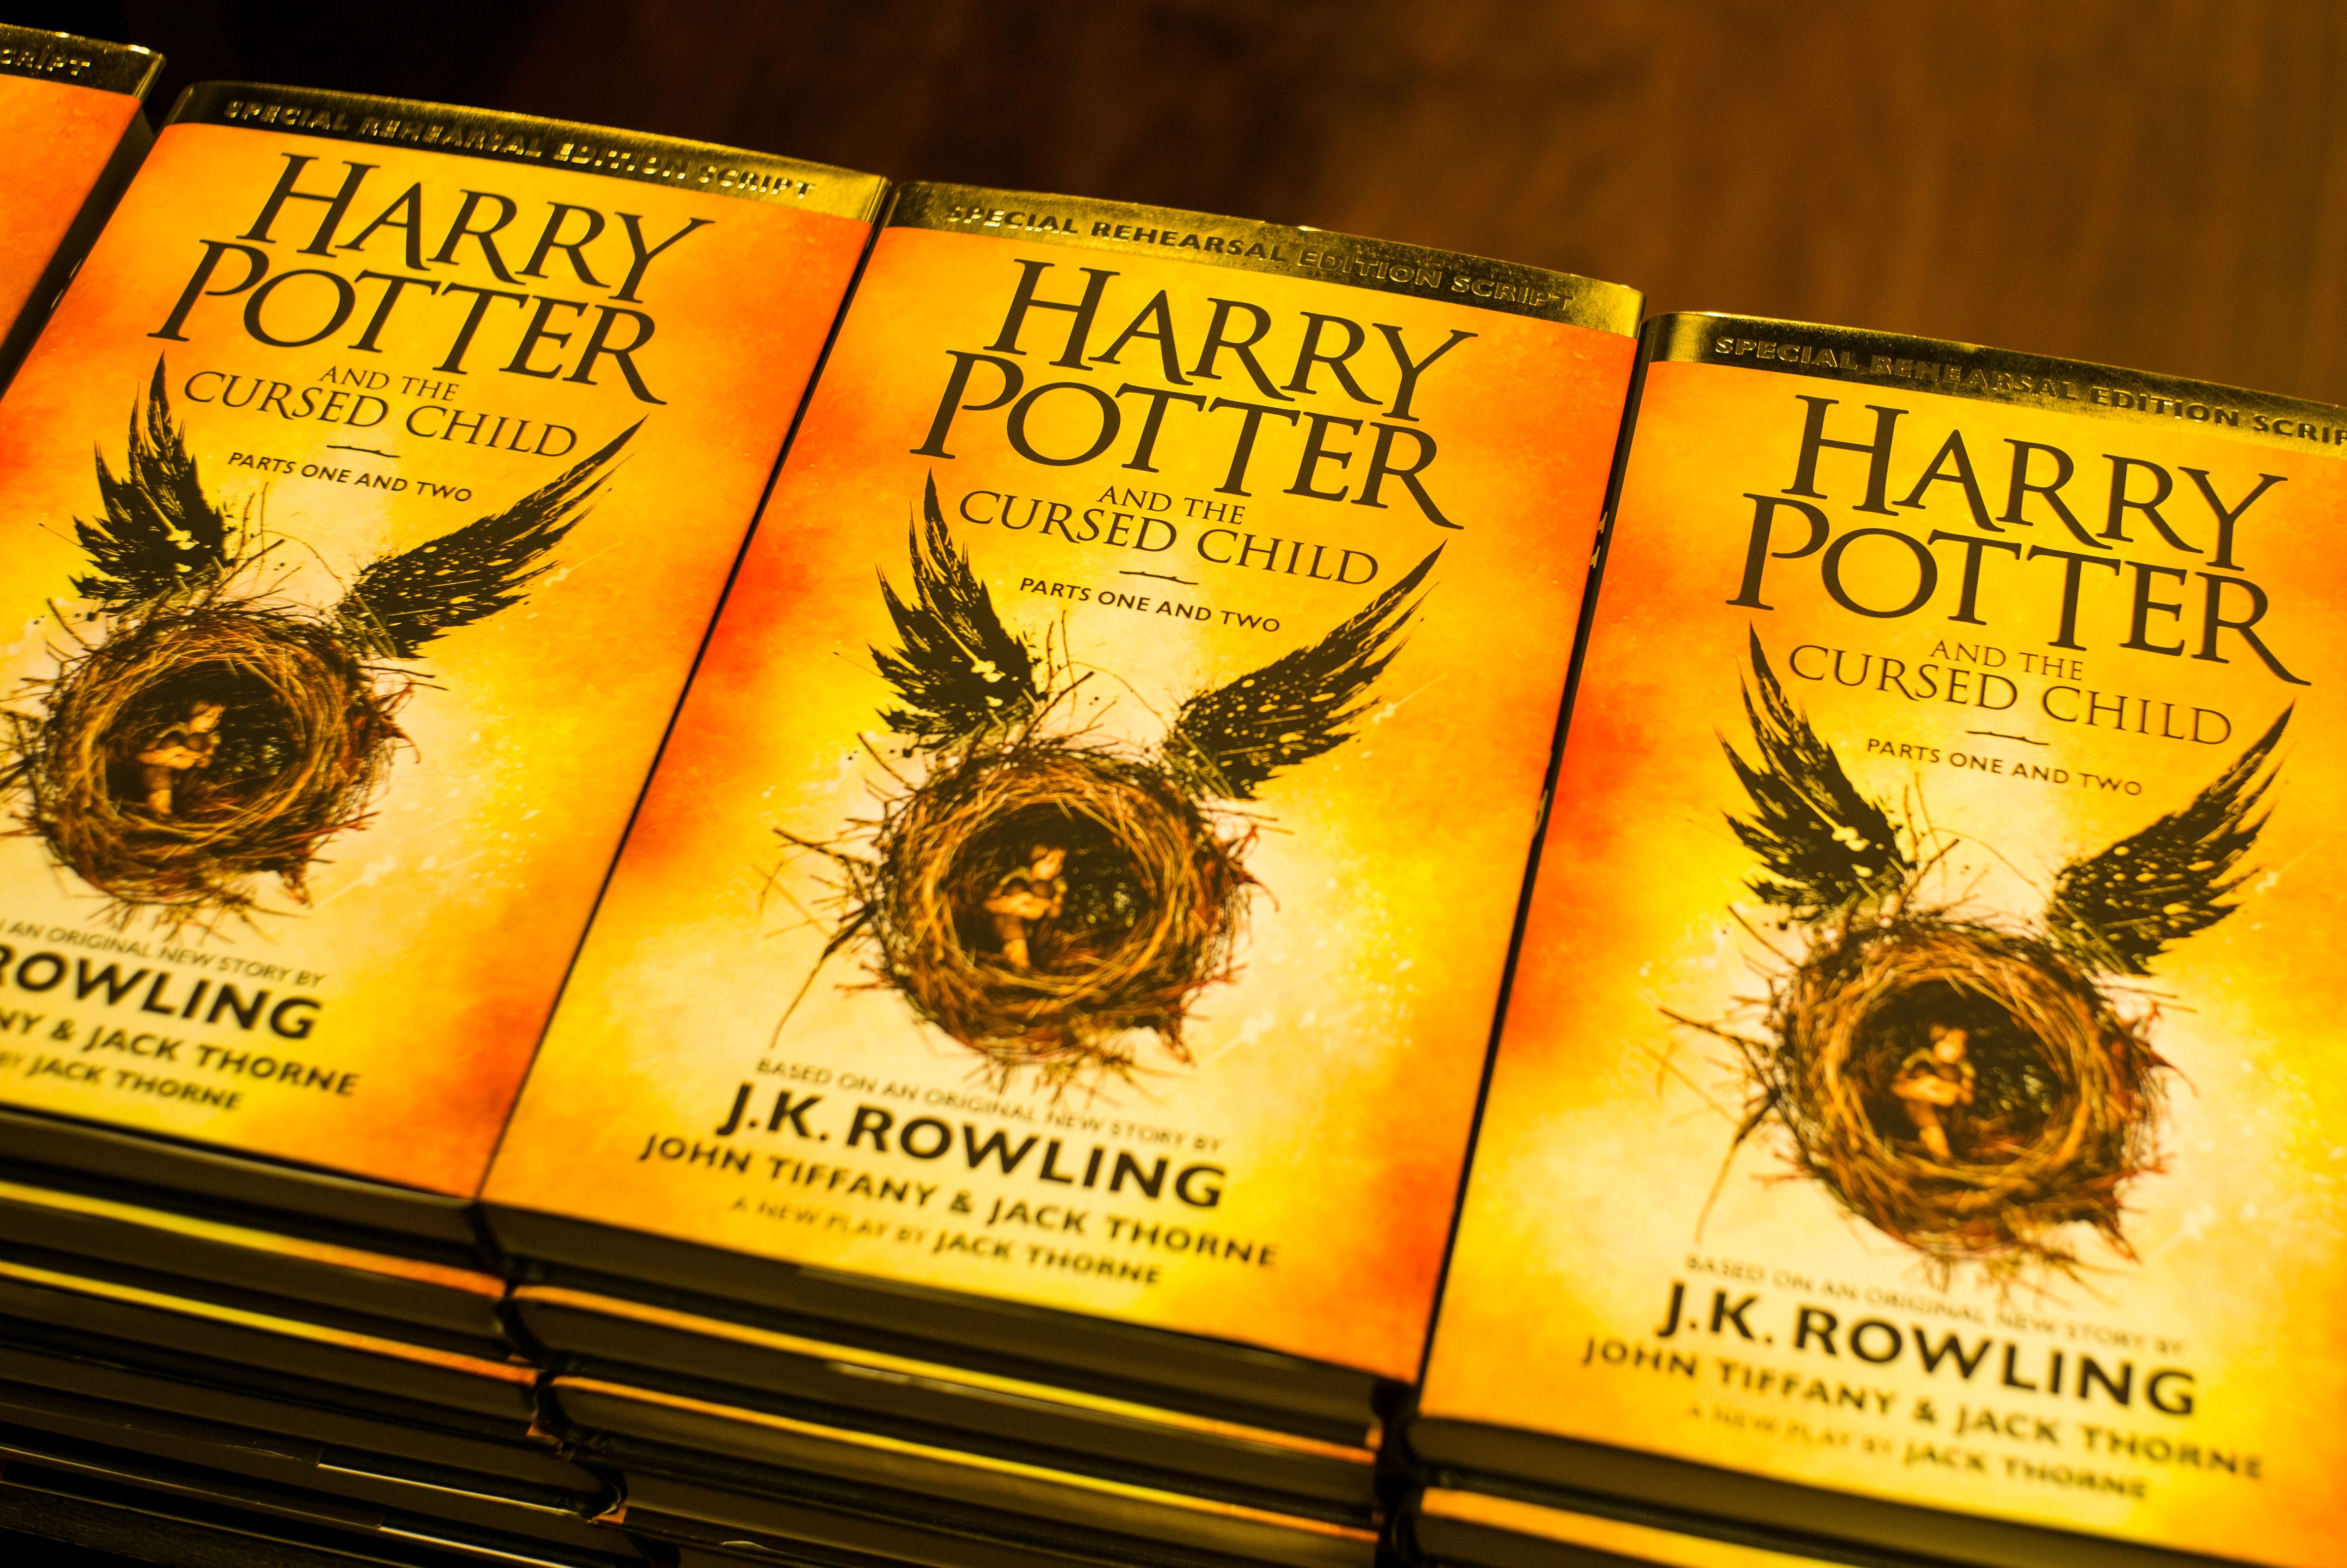 Arte: "Harry Potter and the Cursed Child" vende 2 milhões de cópias em dois dias